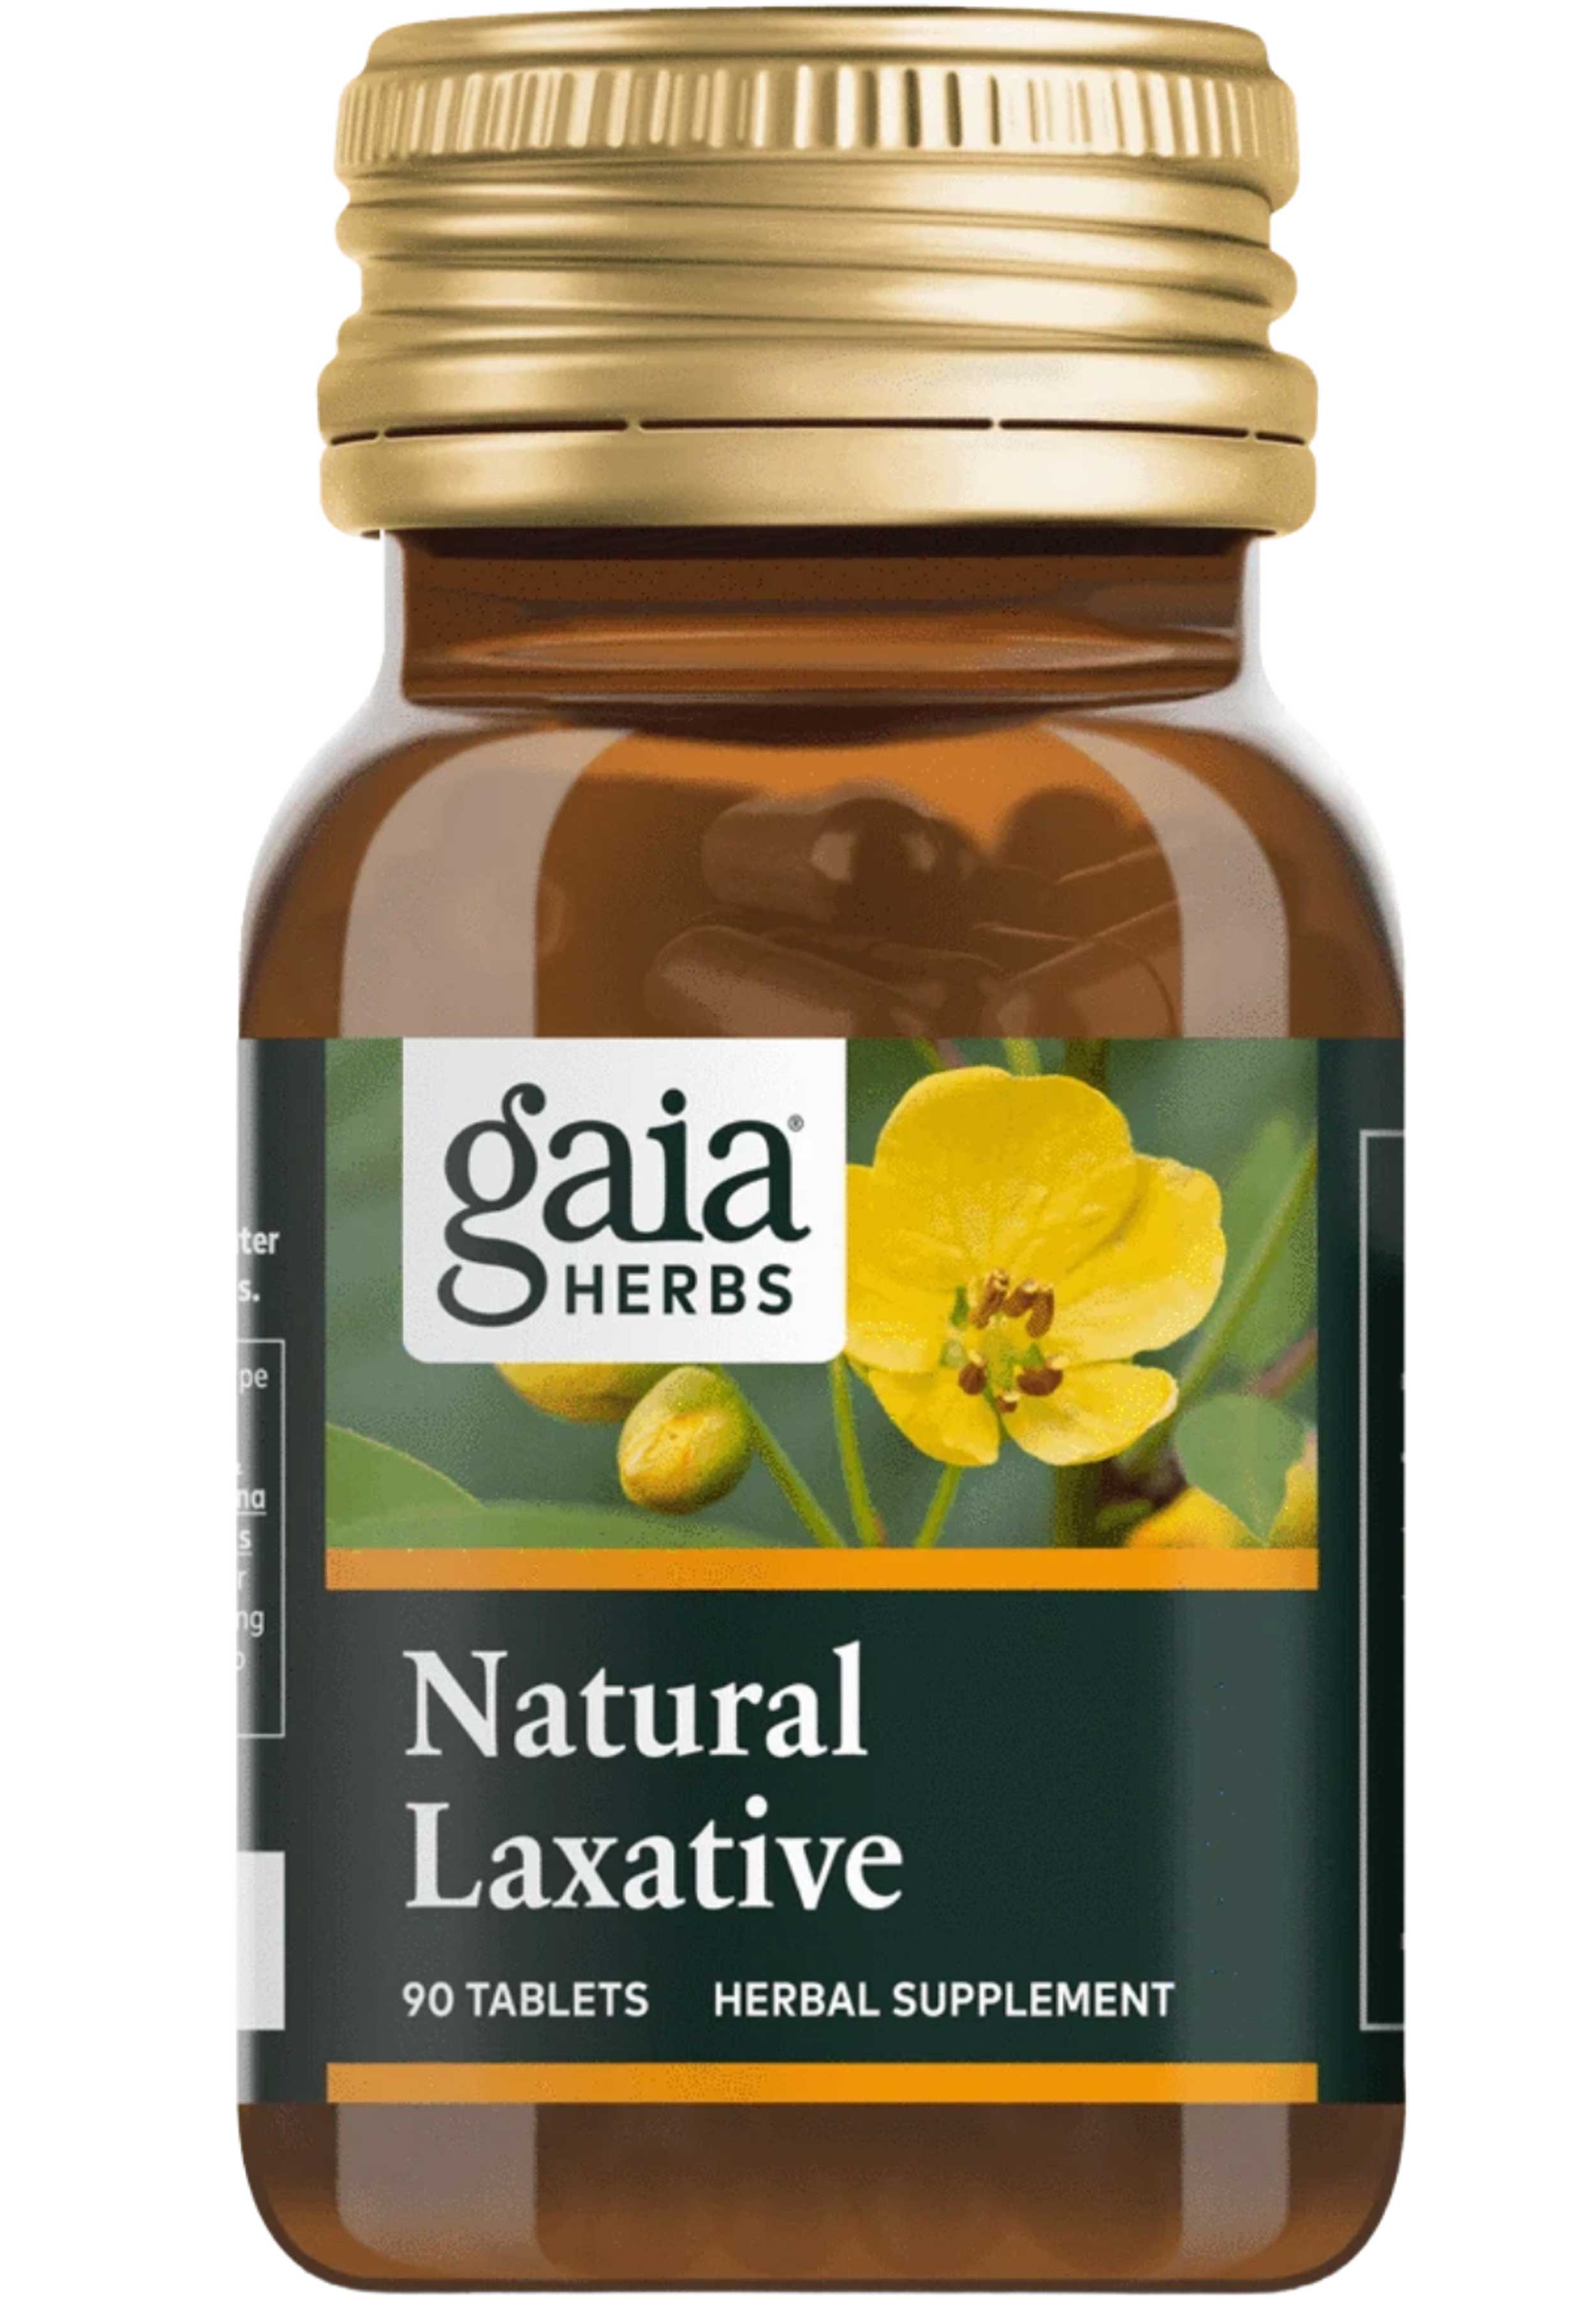 Gaia Herbs Natural Laxative